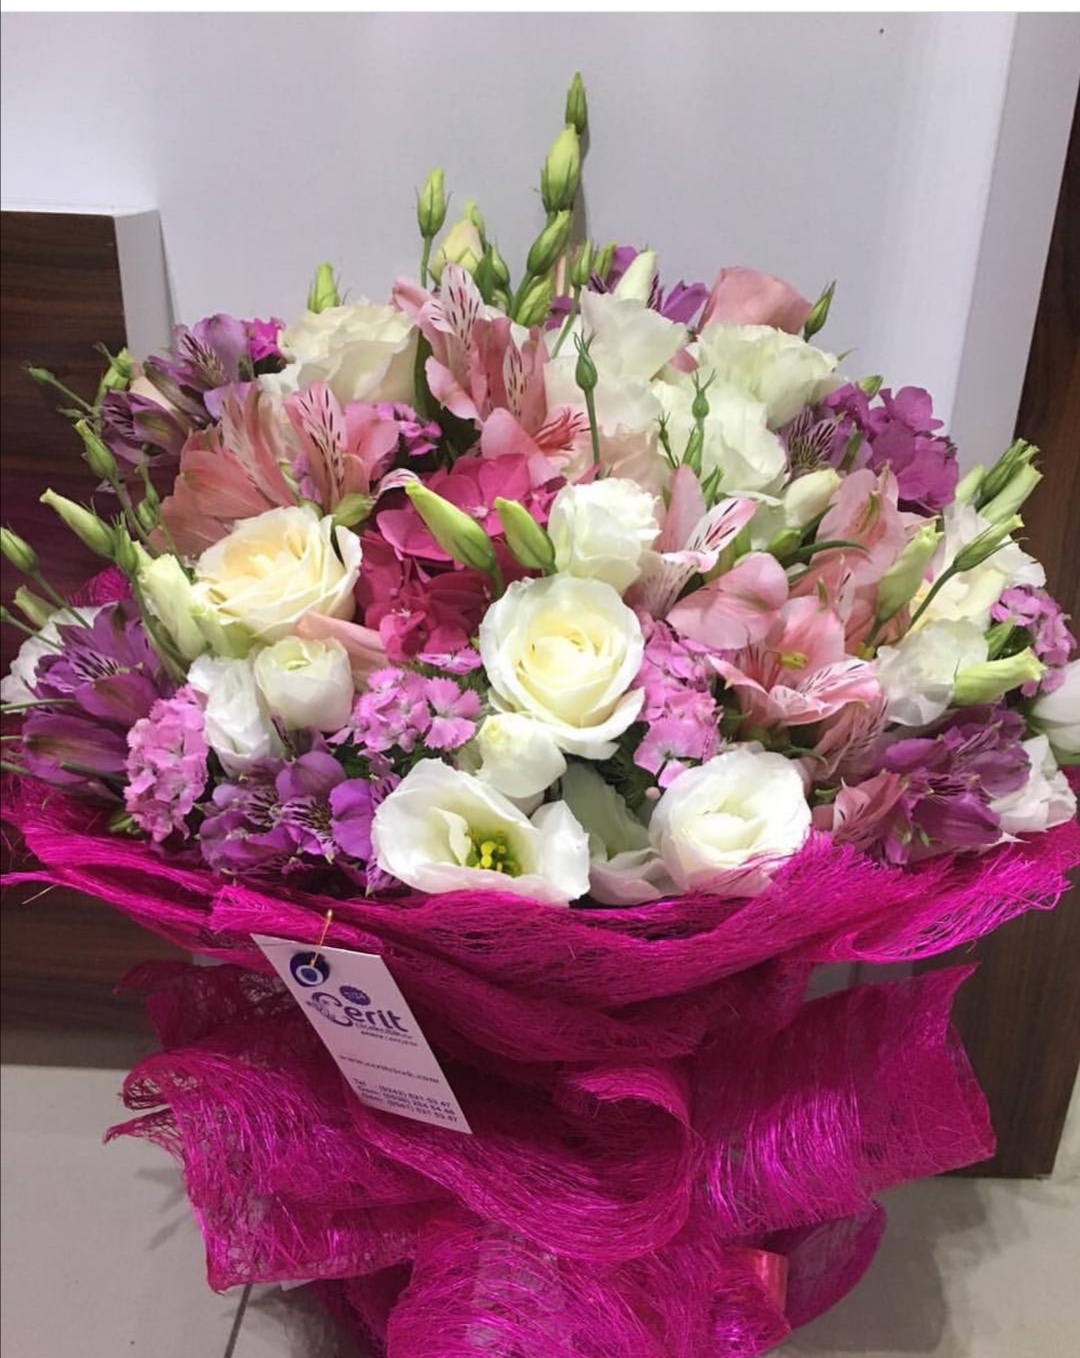  Belek Blumenlieferung Pink white bouquet